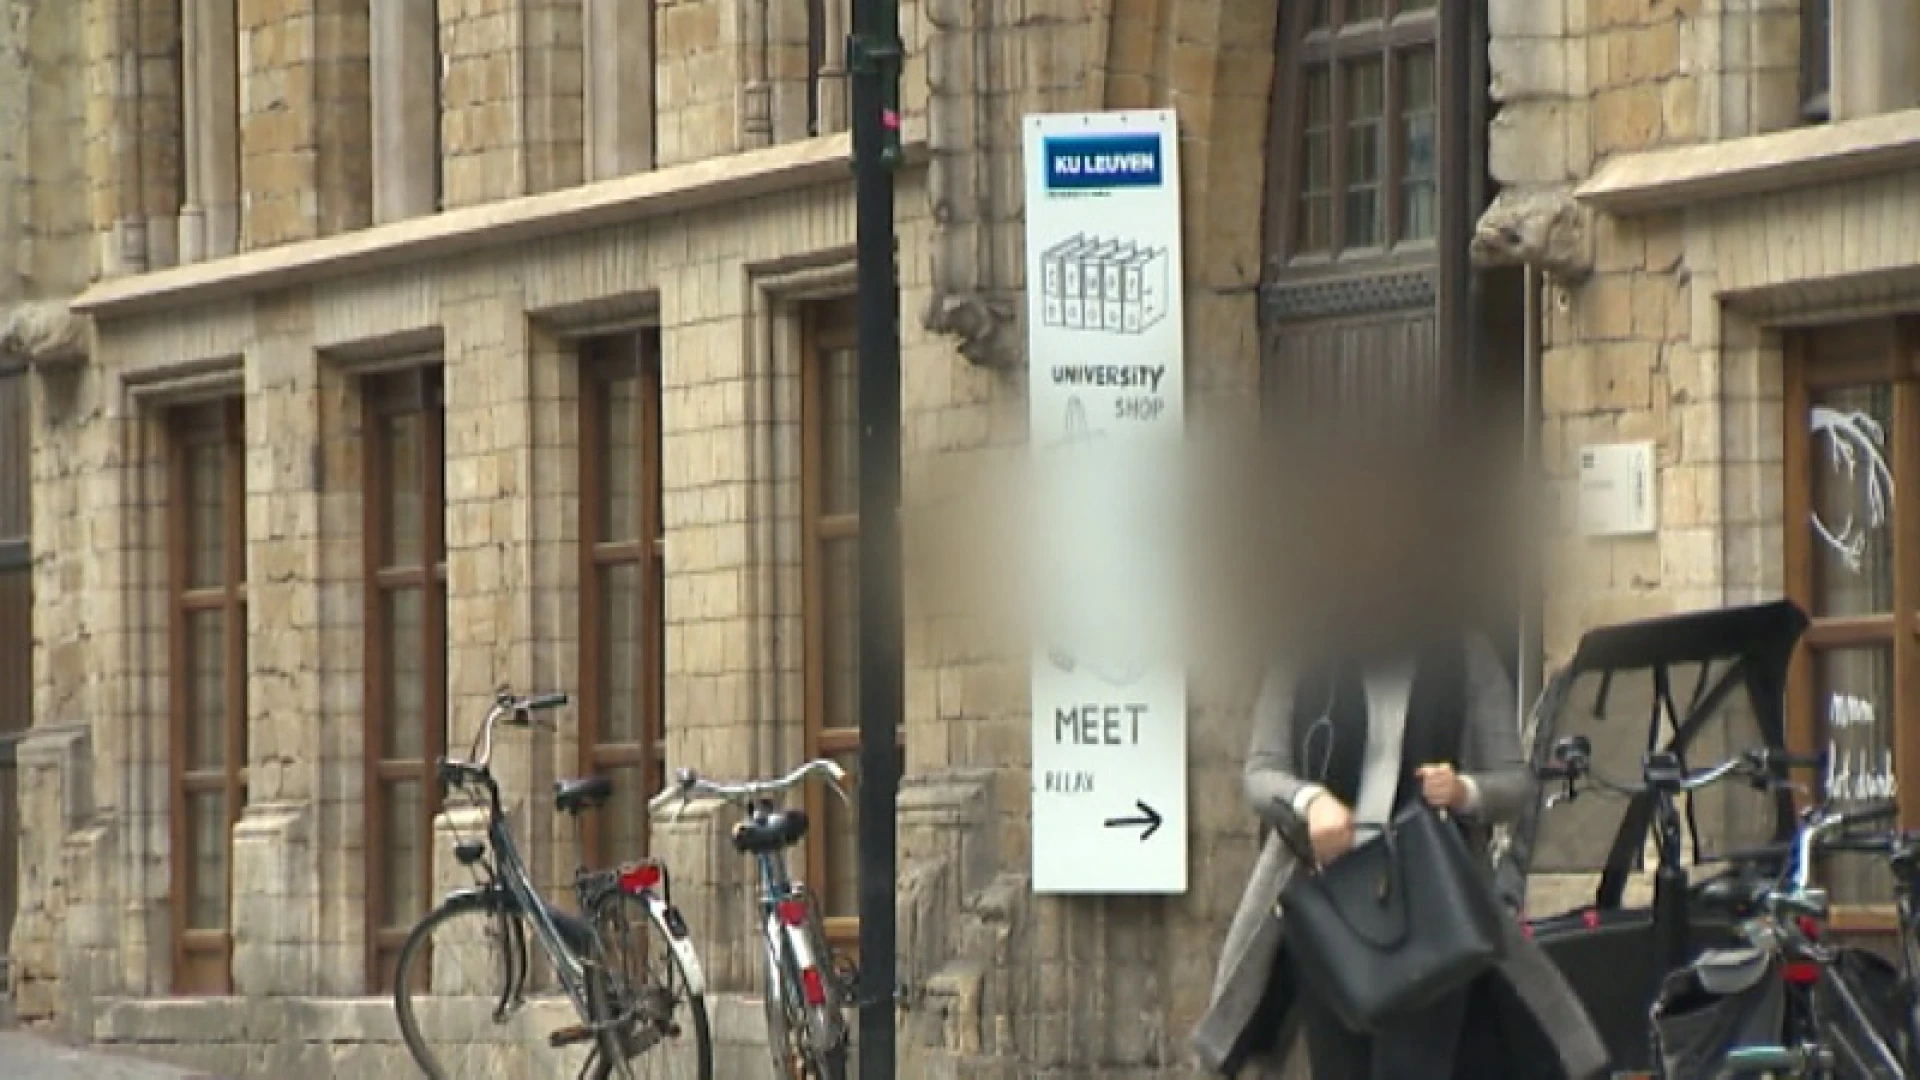 Alle aanwezigen op dodelijke studentendoop riskeren schorsing van KU Leuven